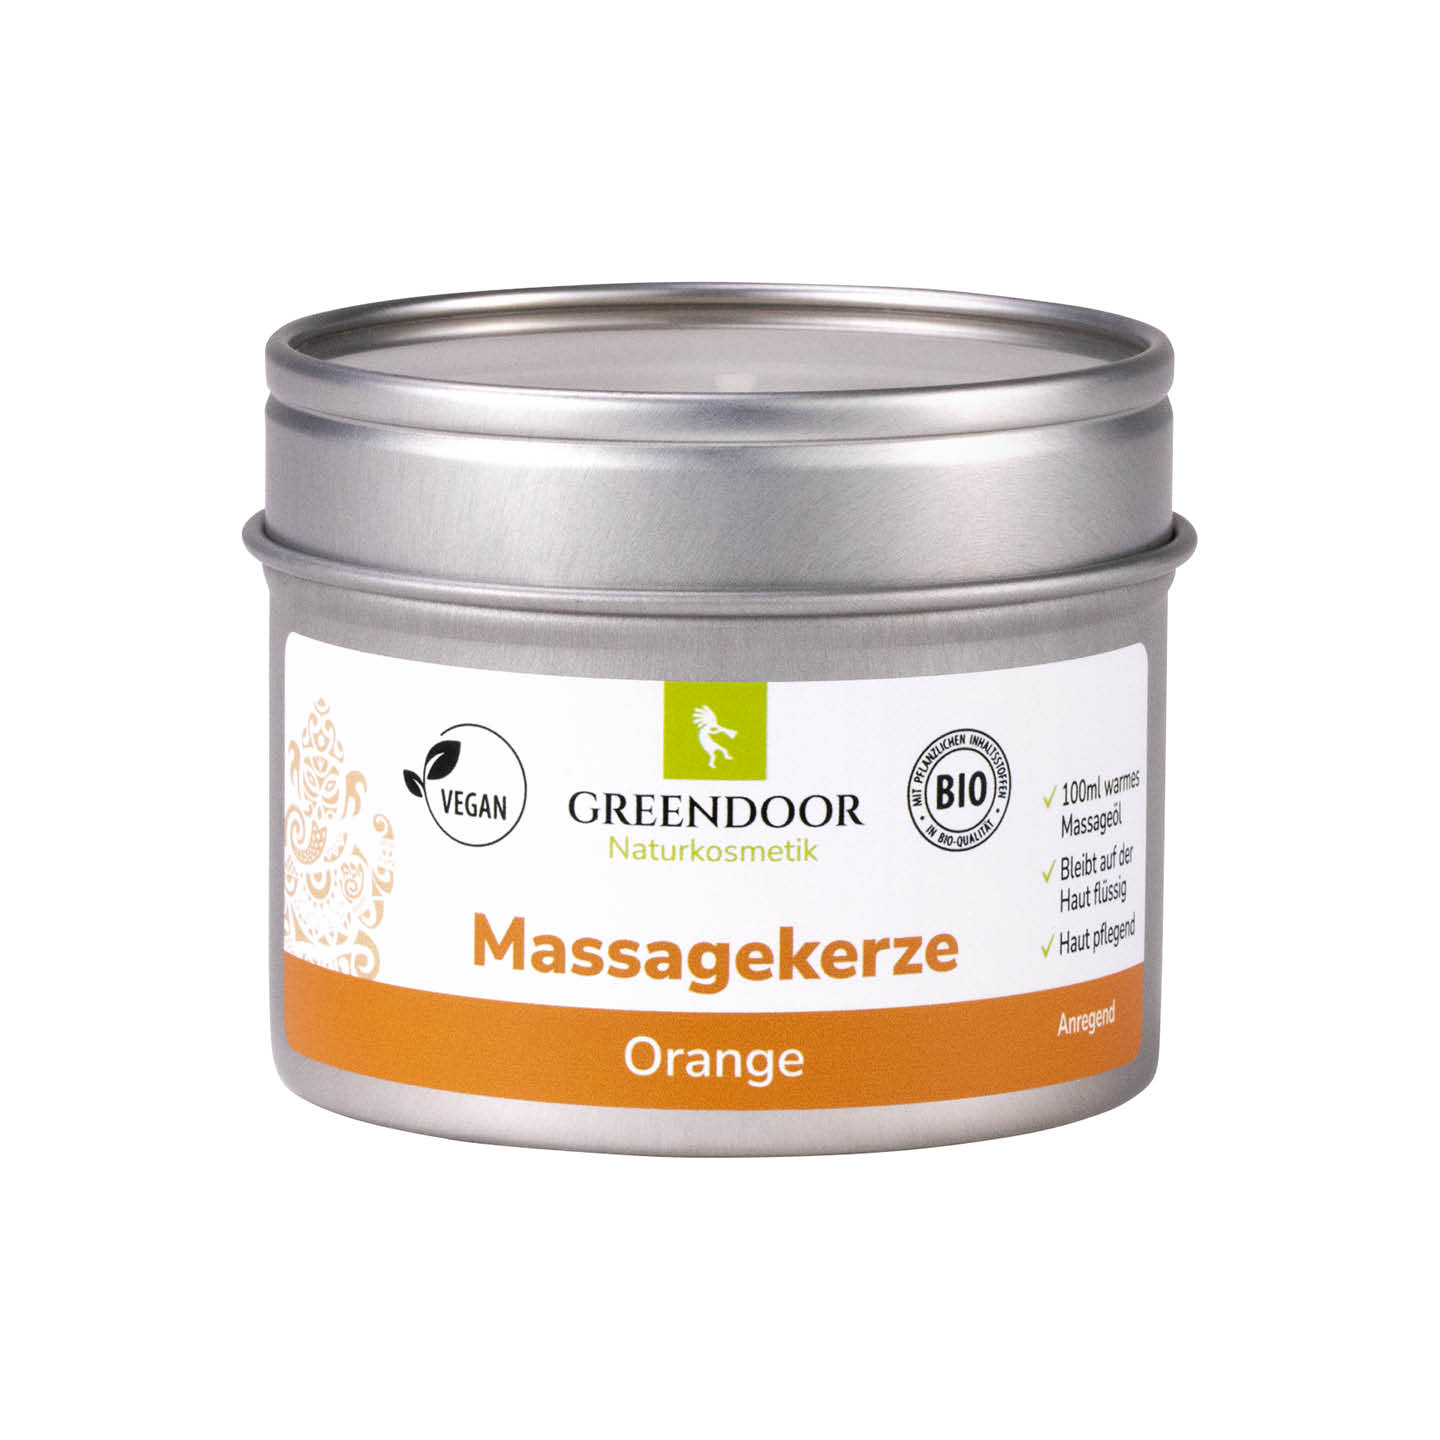 Massagekerze Orange